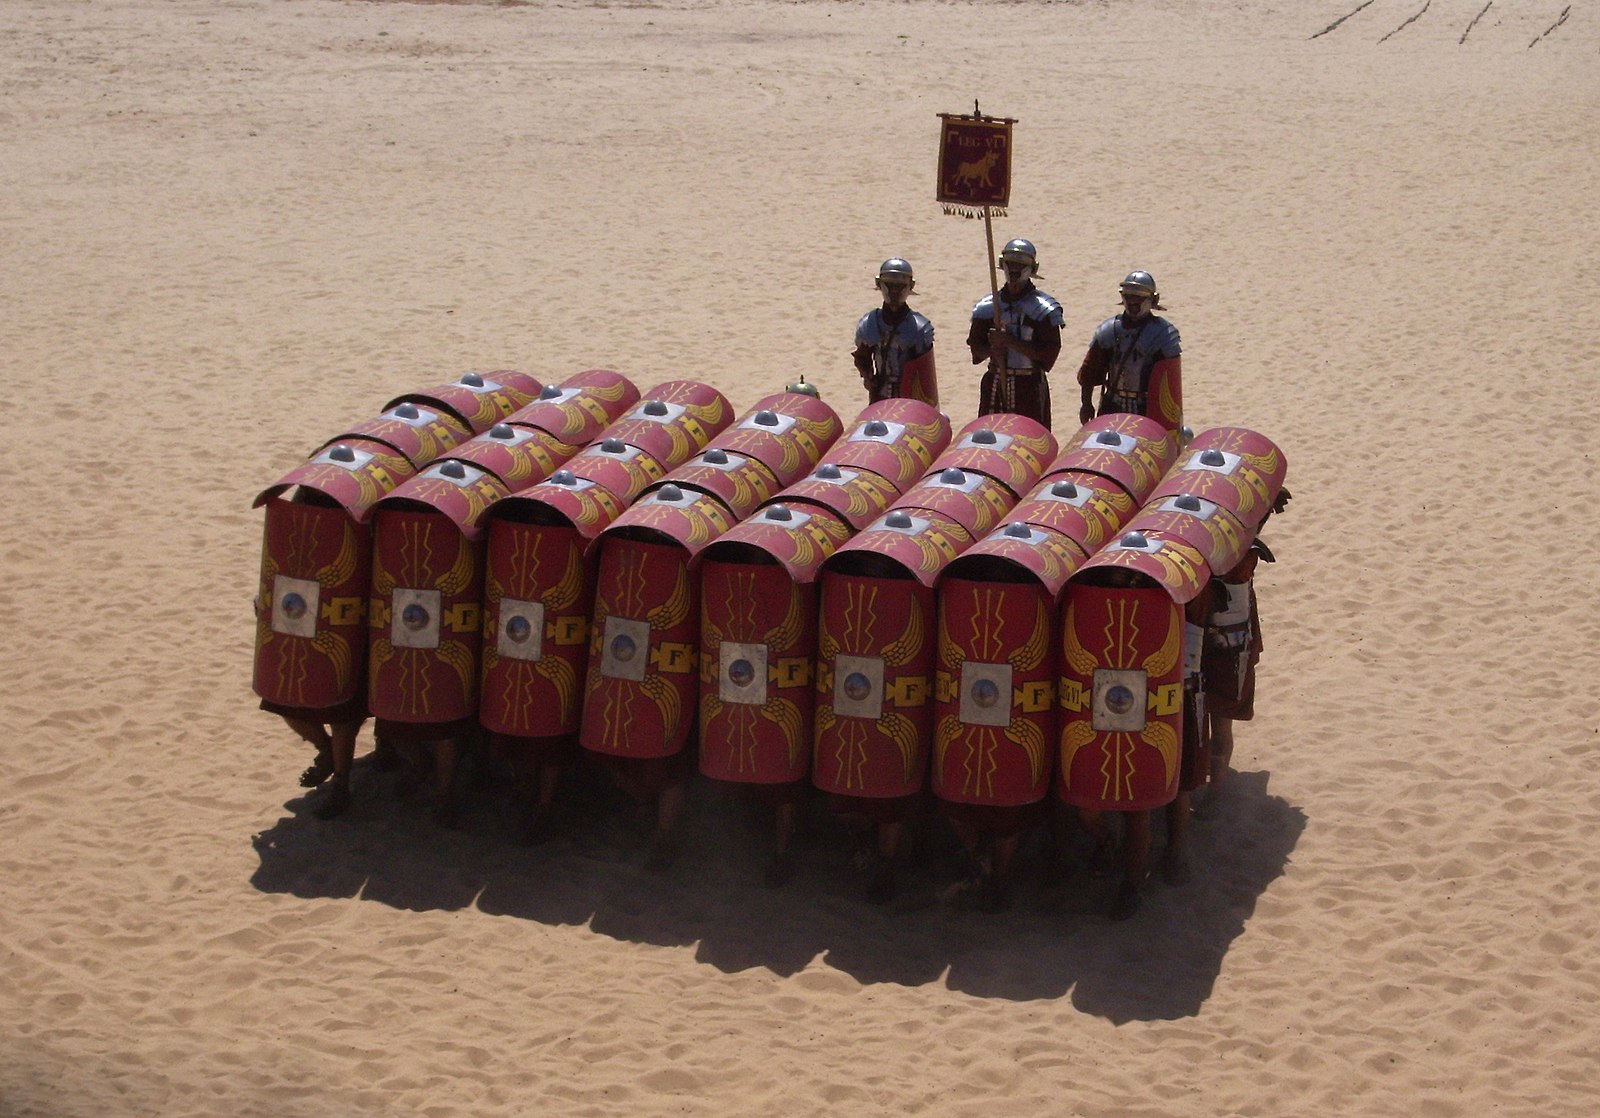 Quân đội La Mã cổ đại đã chiến thắng trong nhiều trận chiến bằng cách sử dụng các đội hình như cách sắp xếp testudo (đội hình mai rùa) này. (Ảnh: Splette/ CC BY-SA 2.0 )